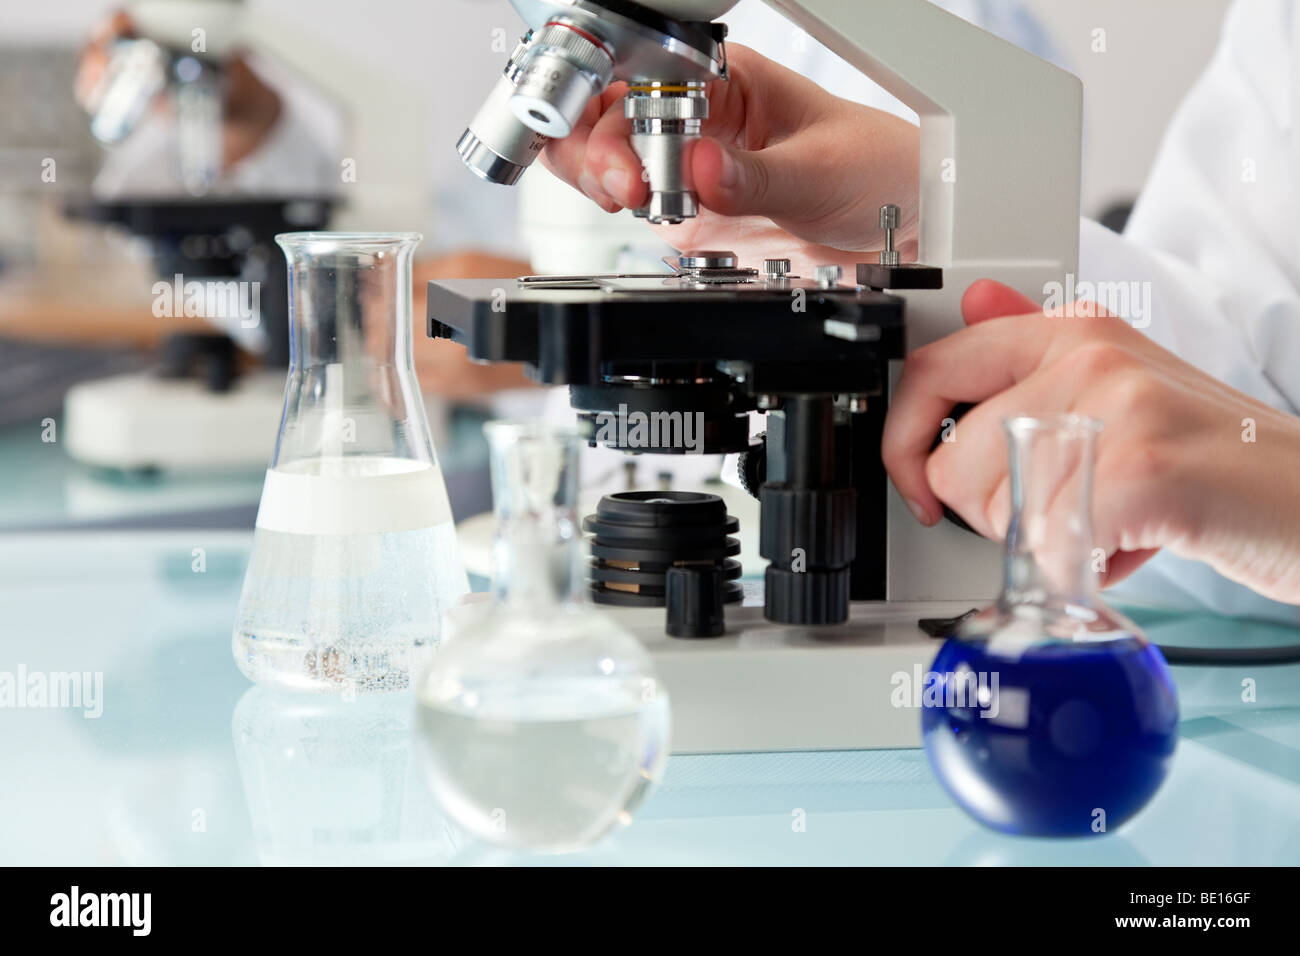 Ad un medico o ad un ricercatore scientifico utilizzando un microscopio in un ambiente di laboratorio con palloni e attrezzature mediche. Foto Stock